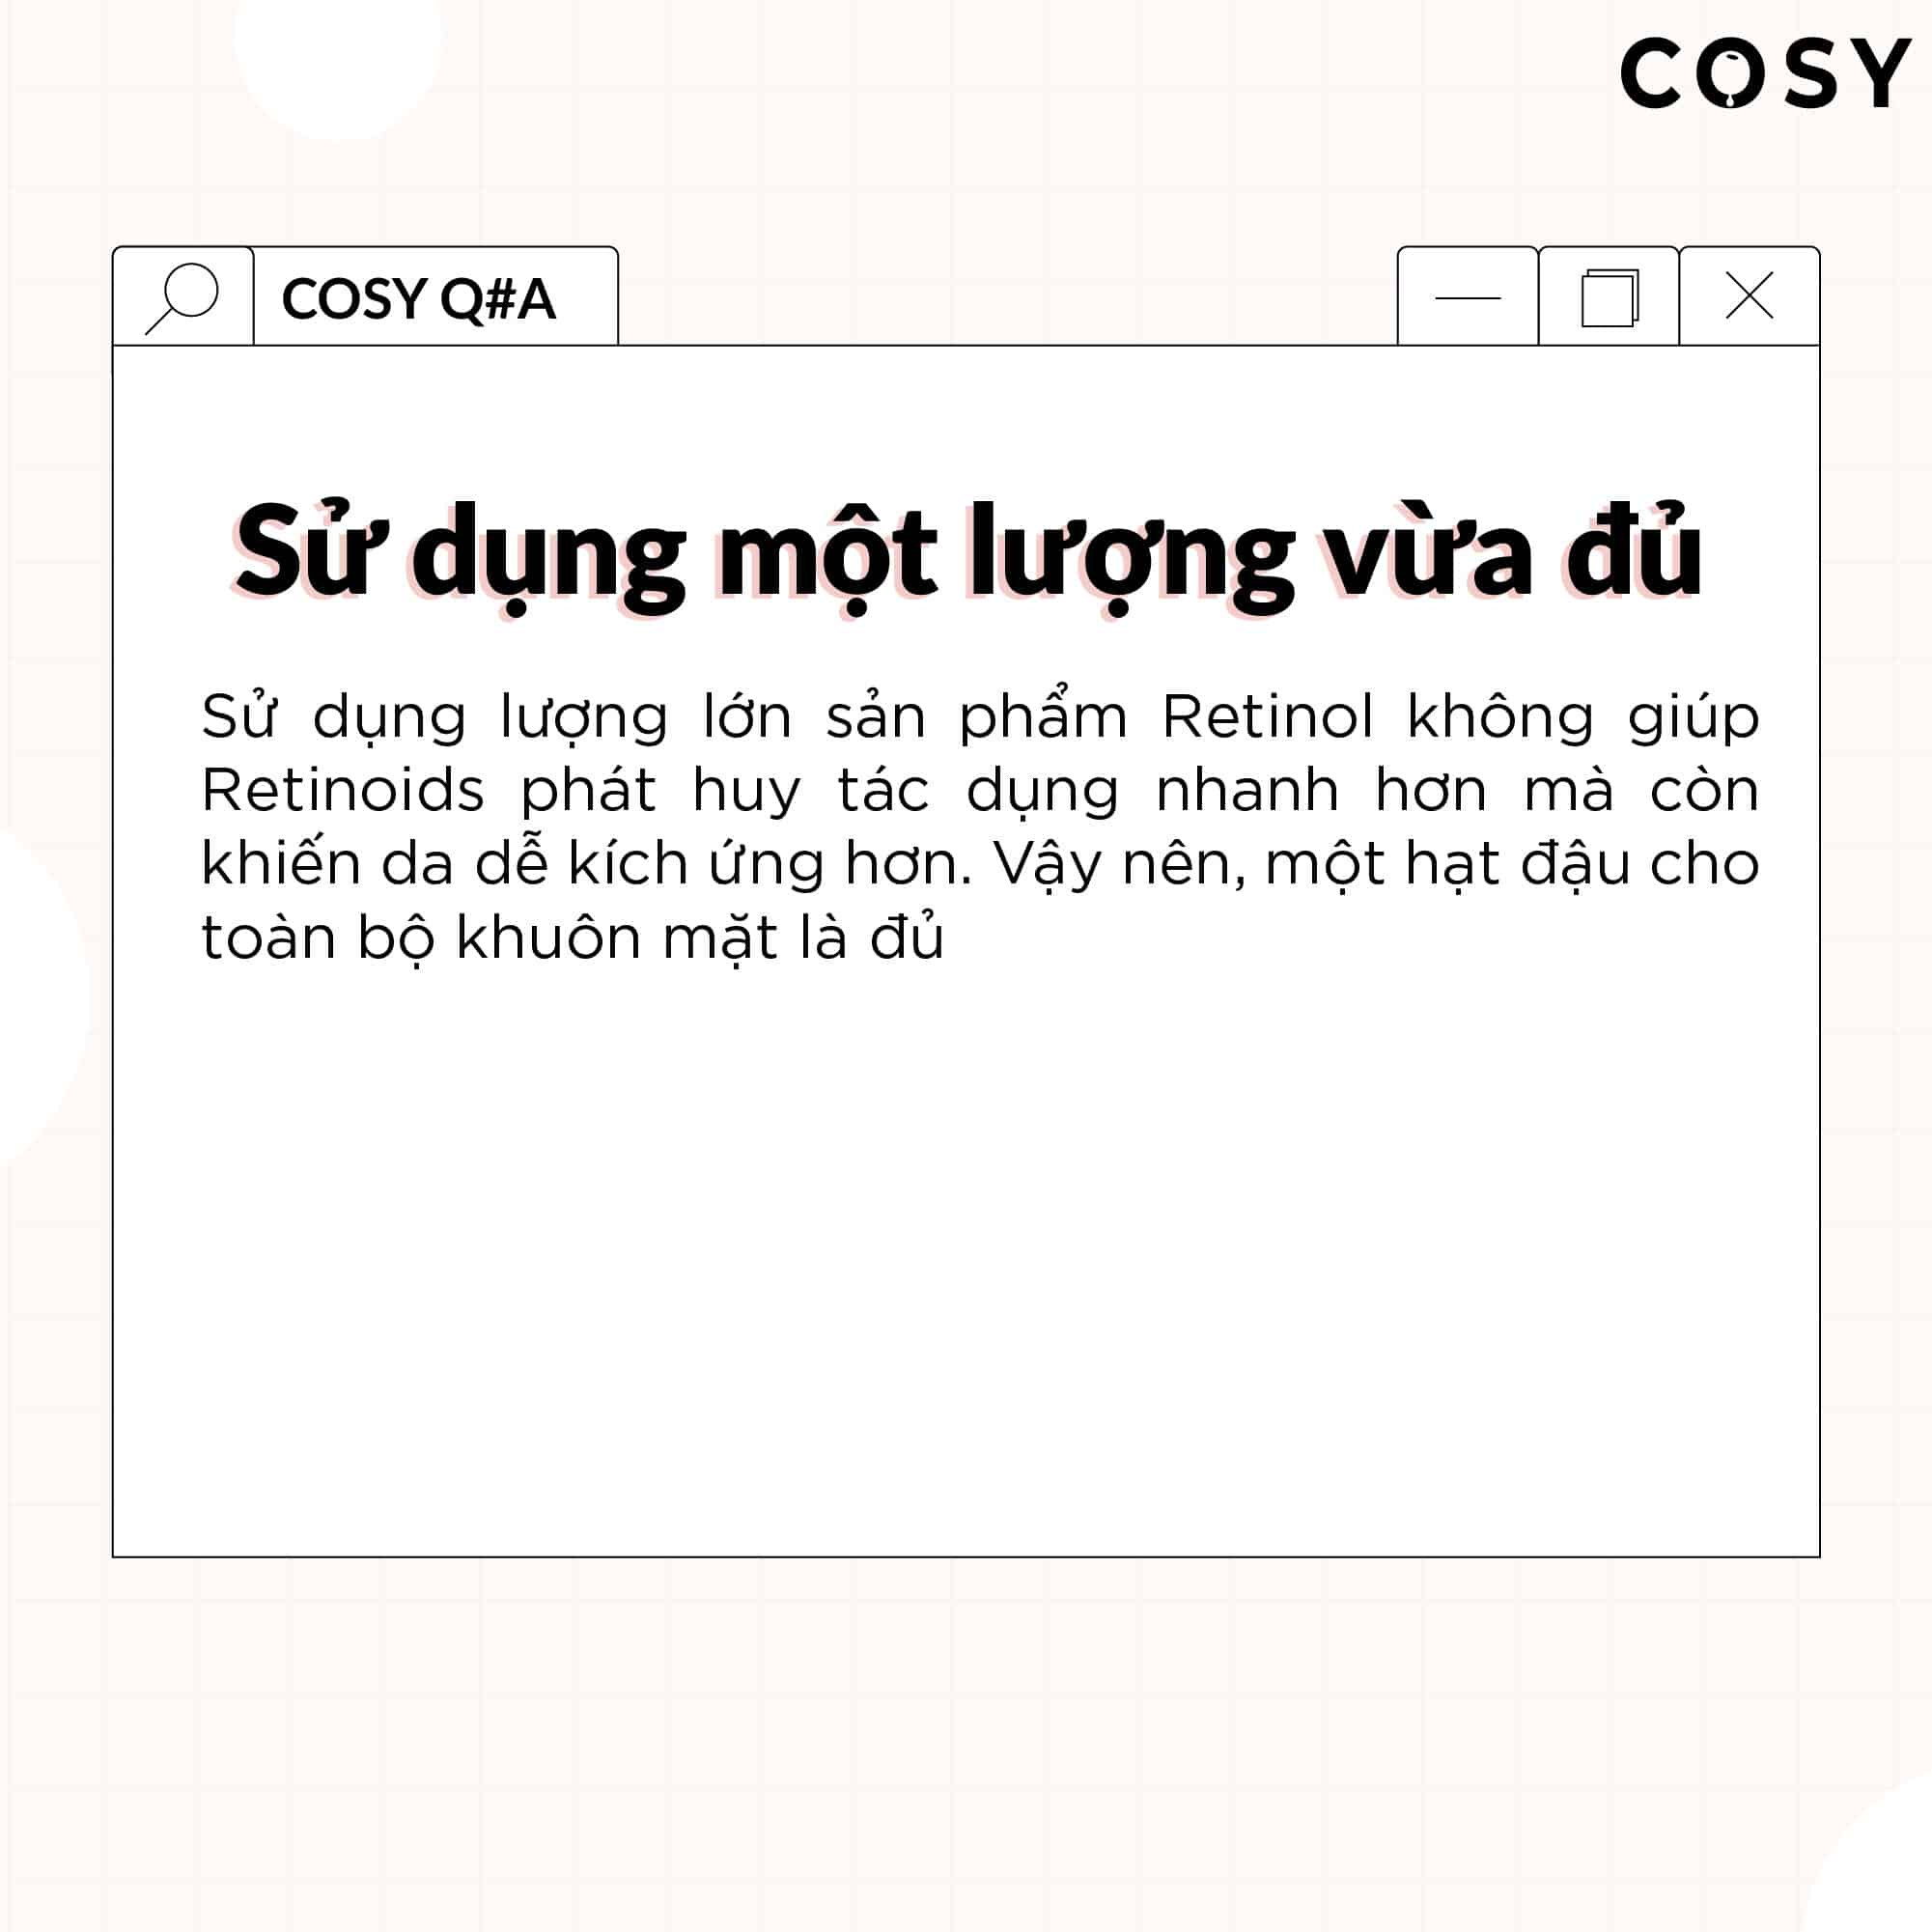 Cosy 04